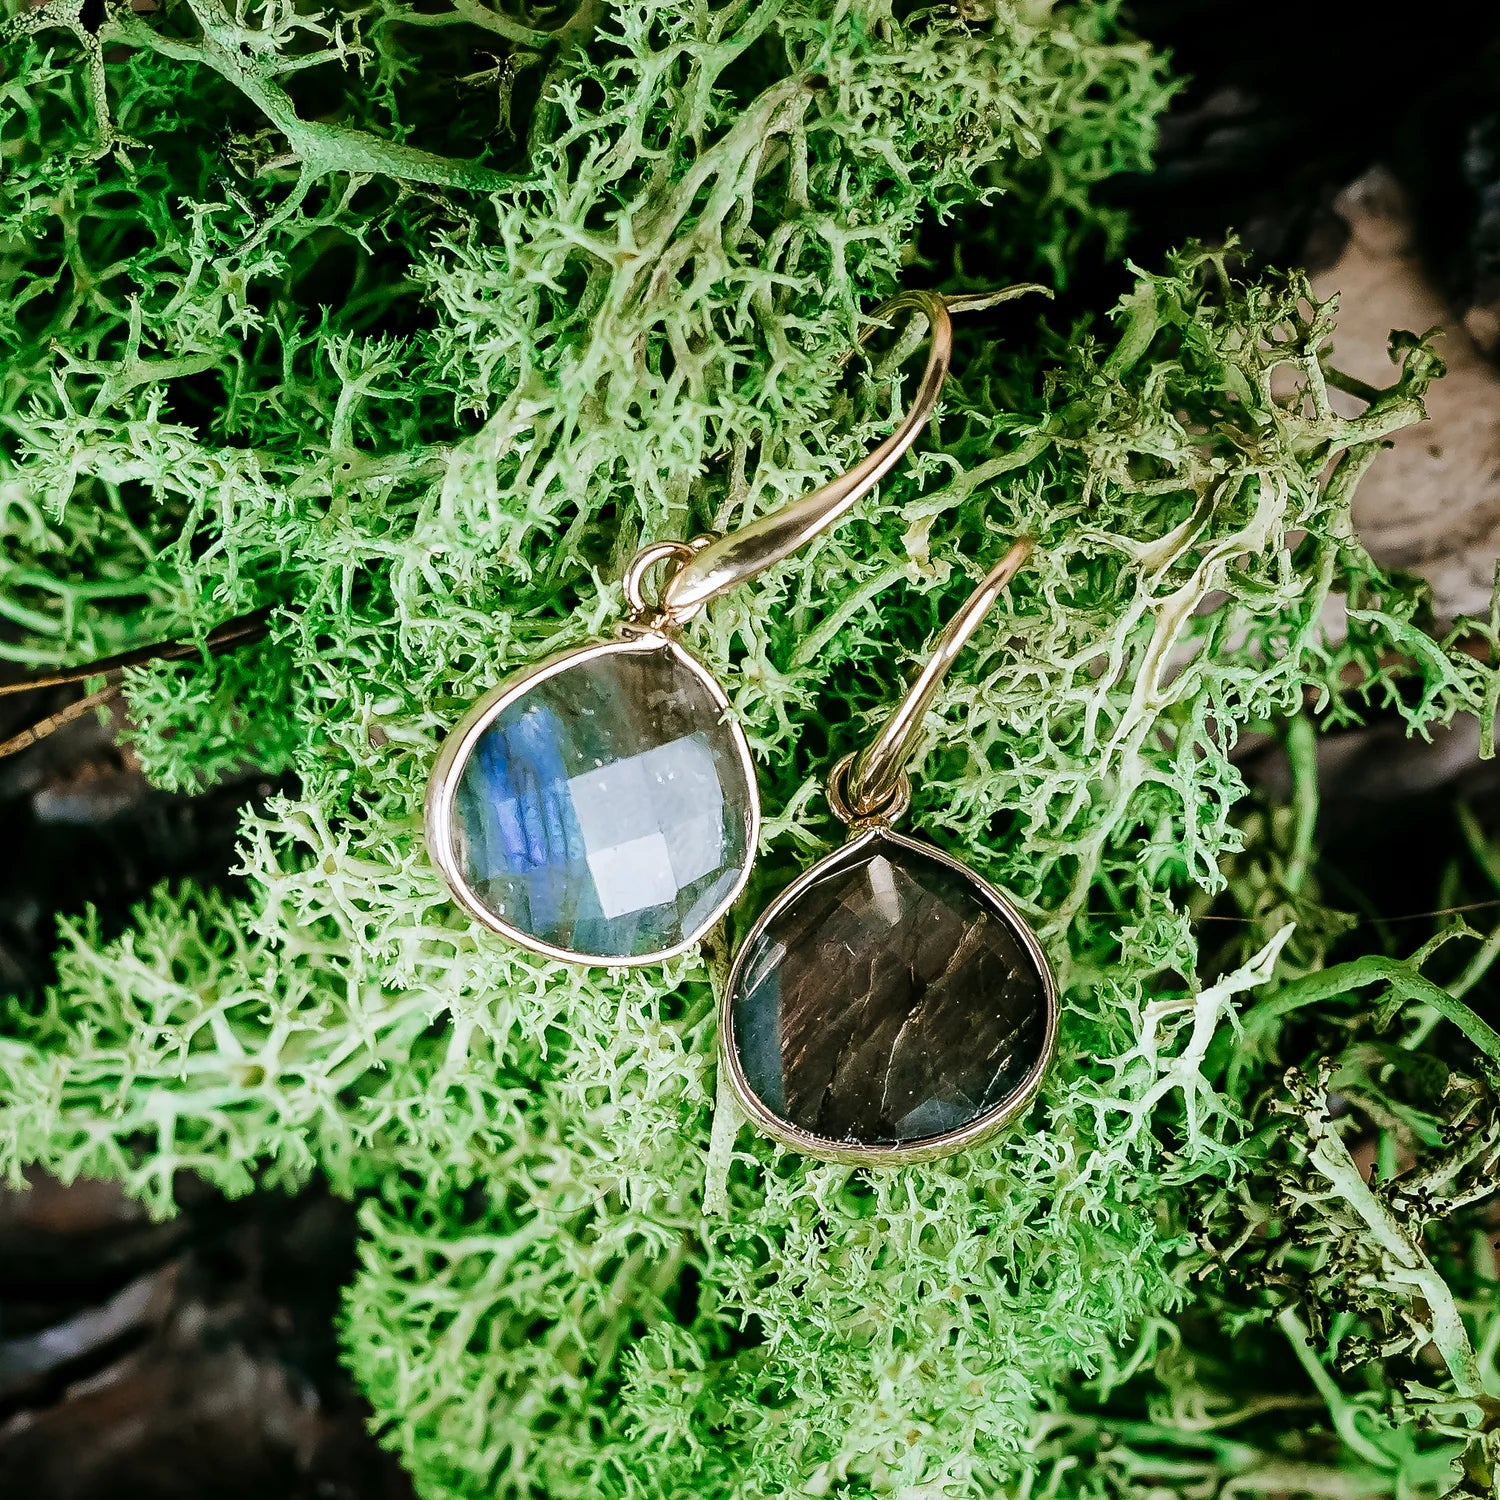 Kolczyki z labradorytem położone na zielonym mchu.